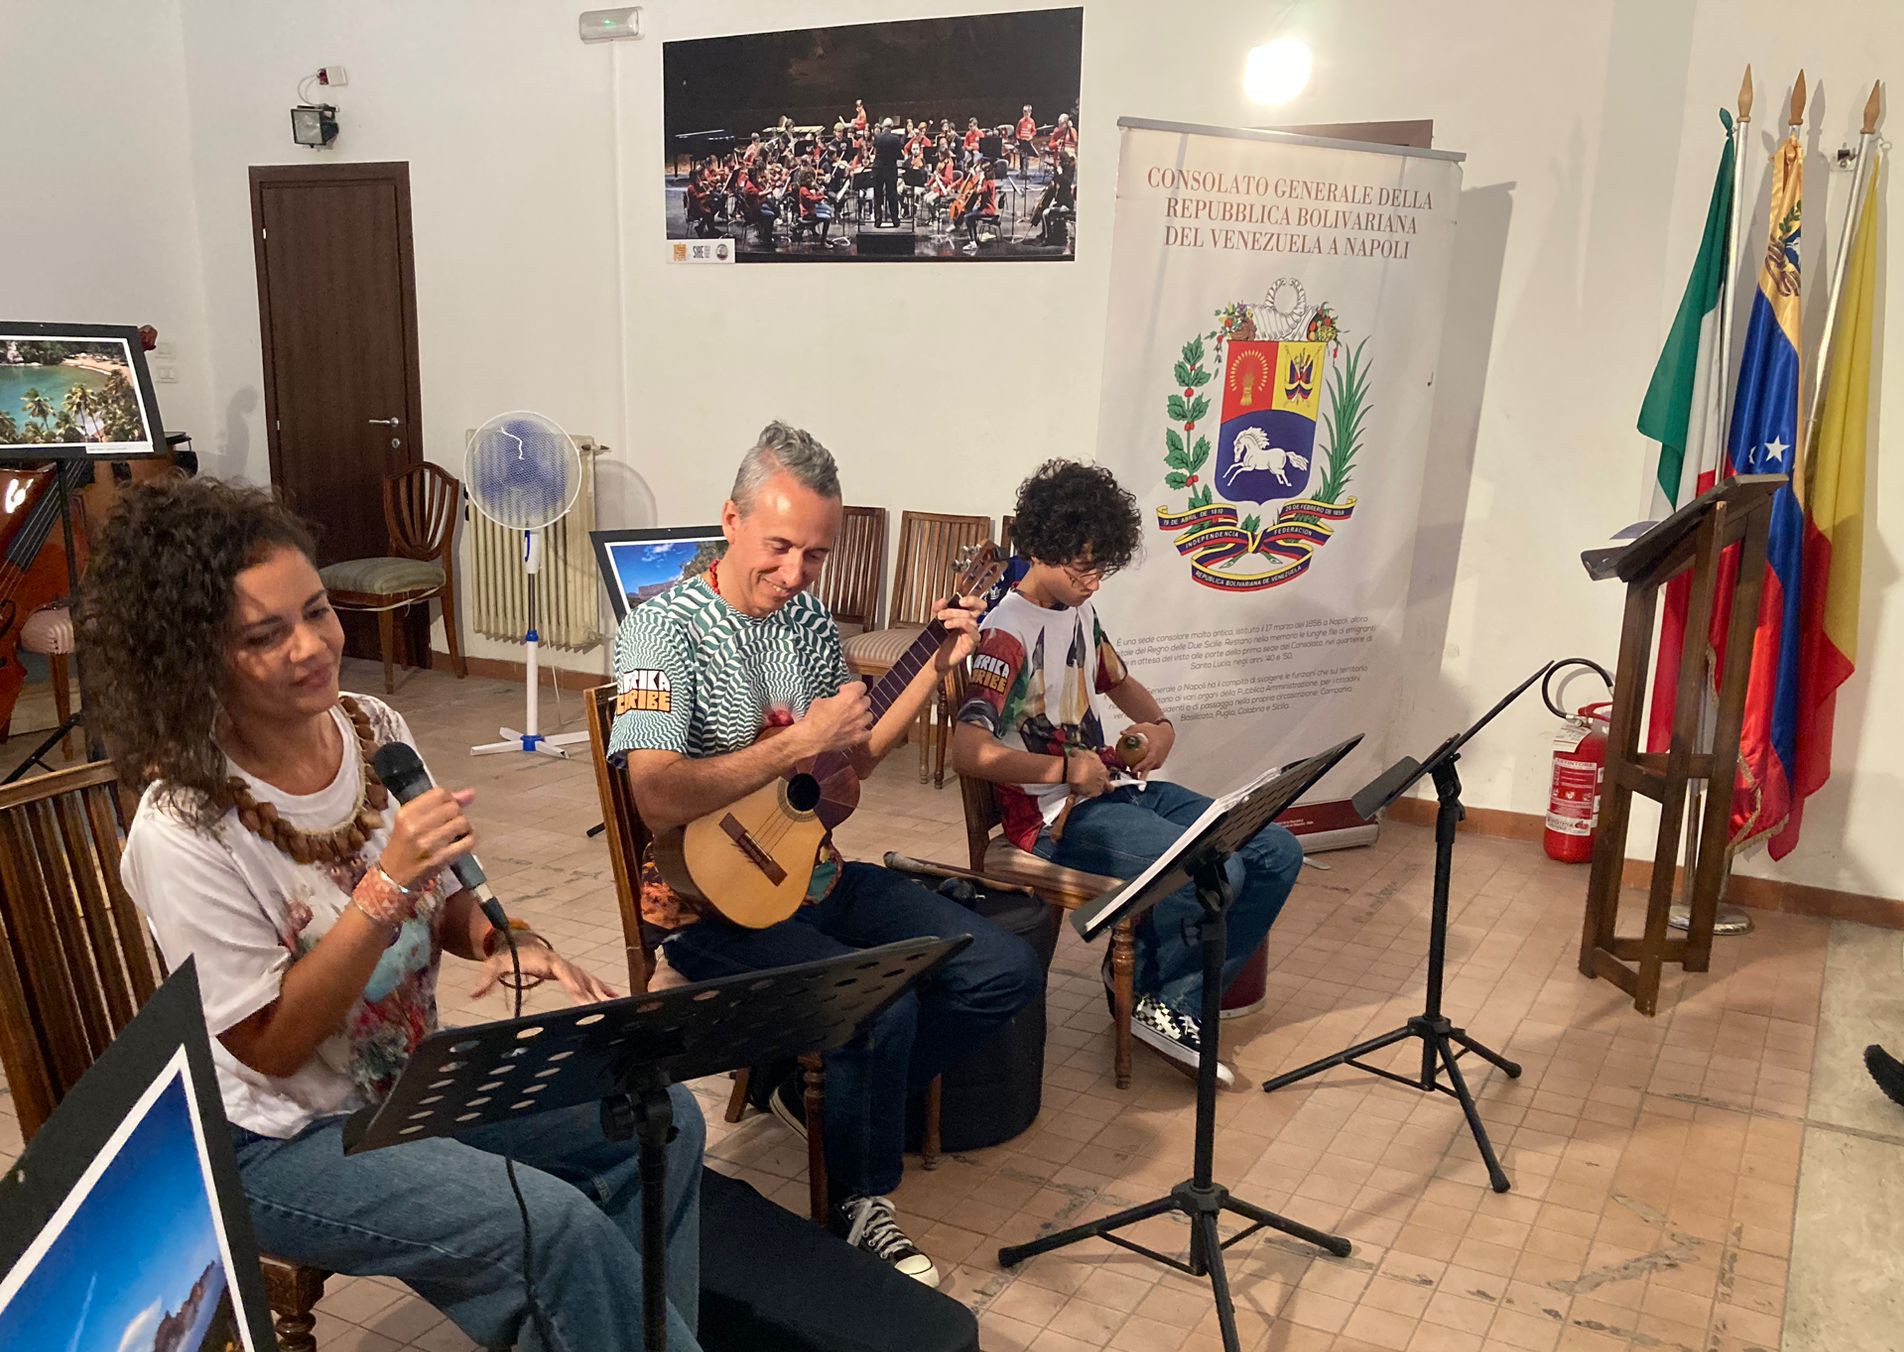 Grupo venezolano Fabiola José Trío ofrece concierto didáctico en Nápoles